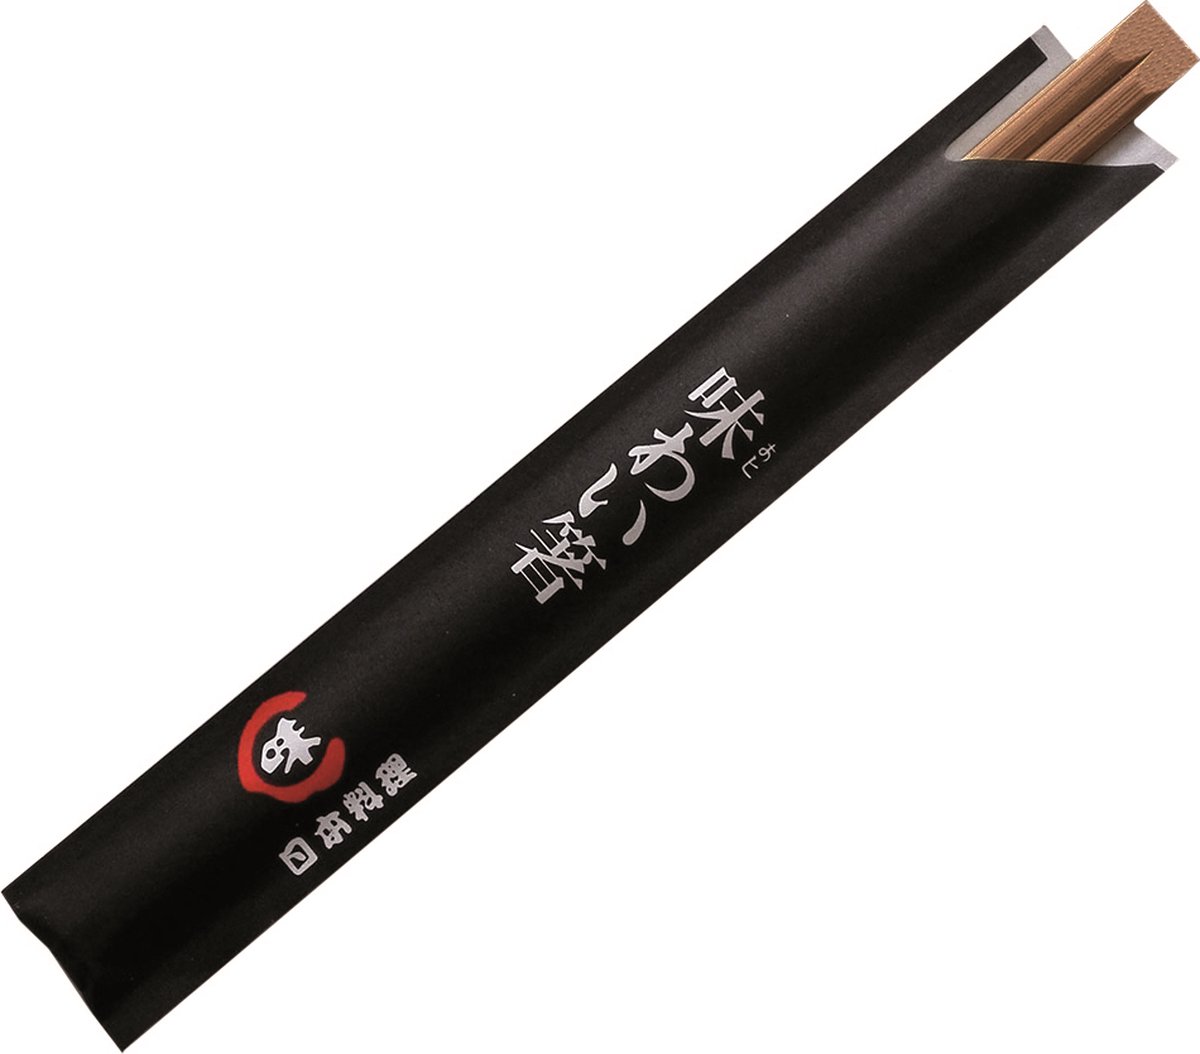 100x Wegwerp Houten Japanse/Chinese Eetstokjes 19,5cm | Bamboe Chopsticks in Zwart Hoesje 100 stuks - Garciadepou